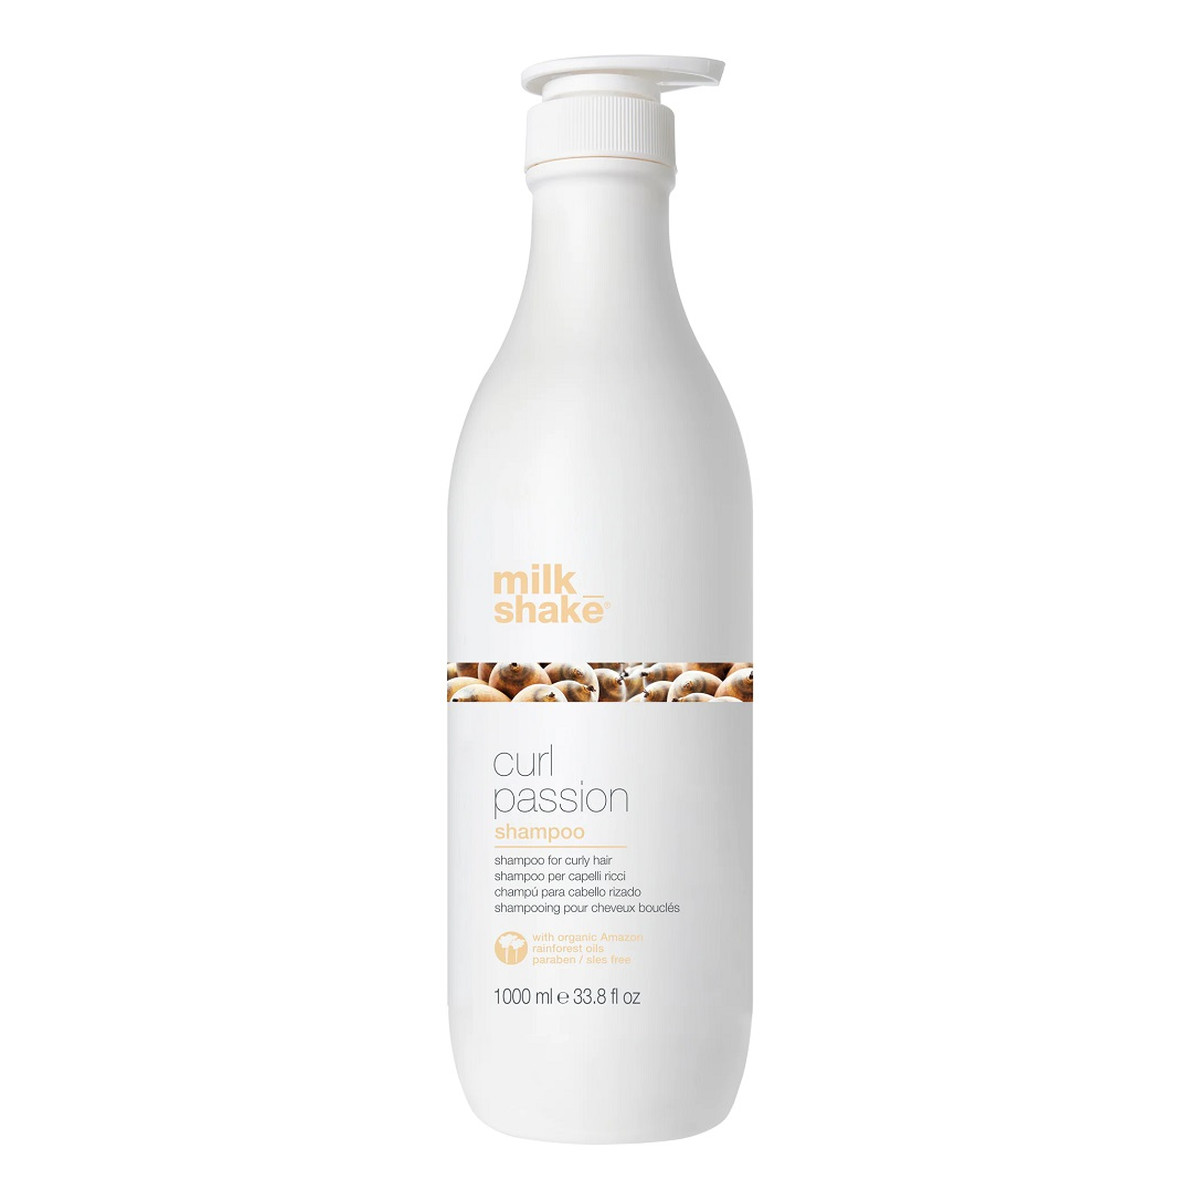 Milk Shake Curl passion shampoo szampon do włosów kręconych 1000ml